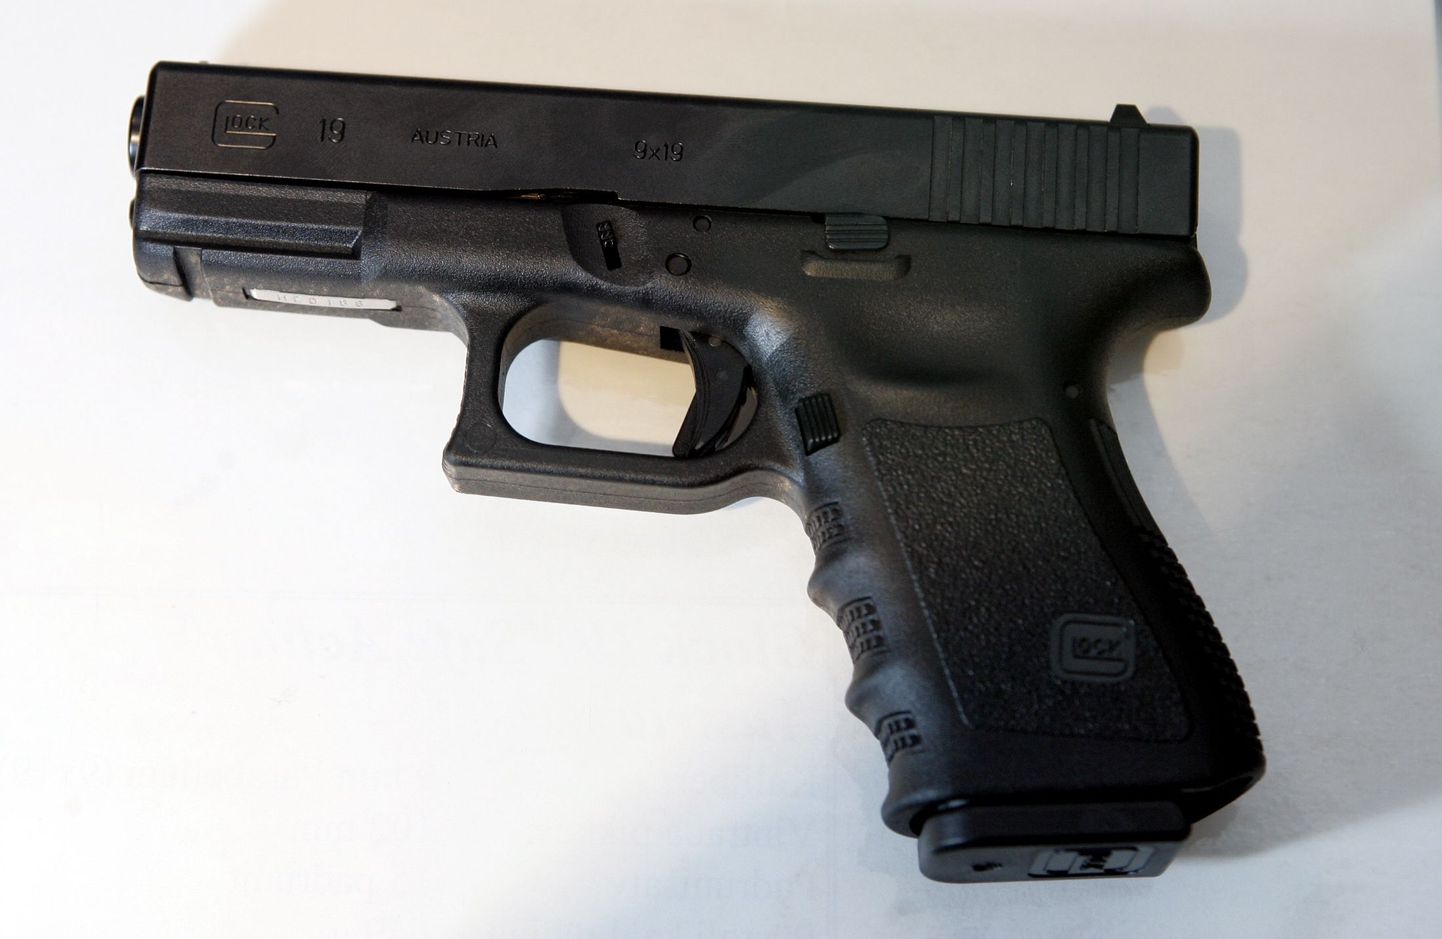 Umbes taolise püstoliga Glock 19 mängis vaimuhaige mees ühes Tartu korteris.